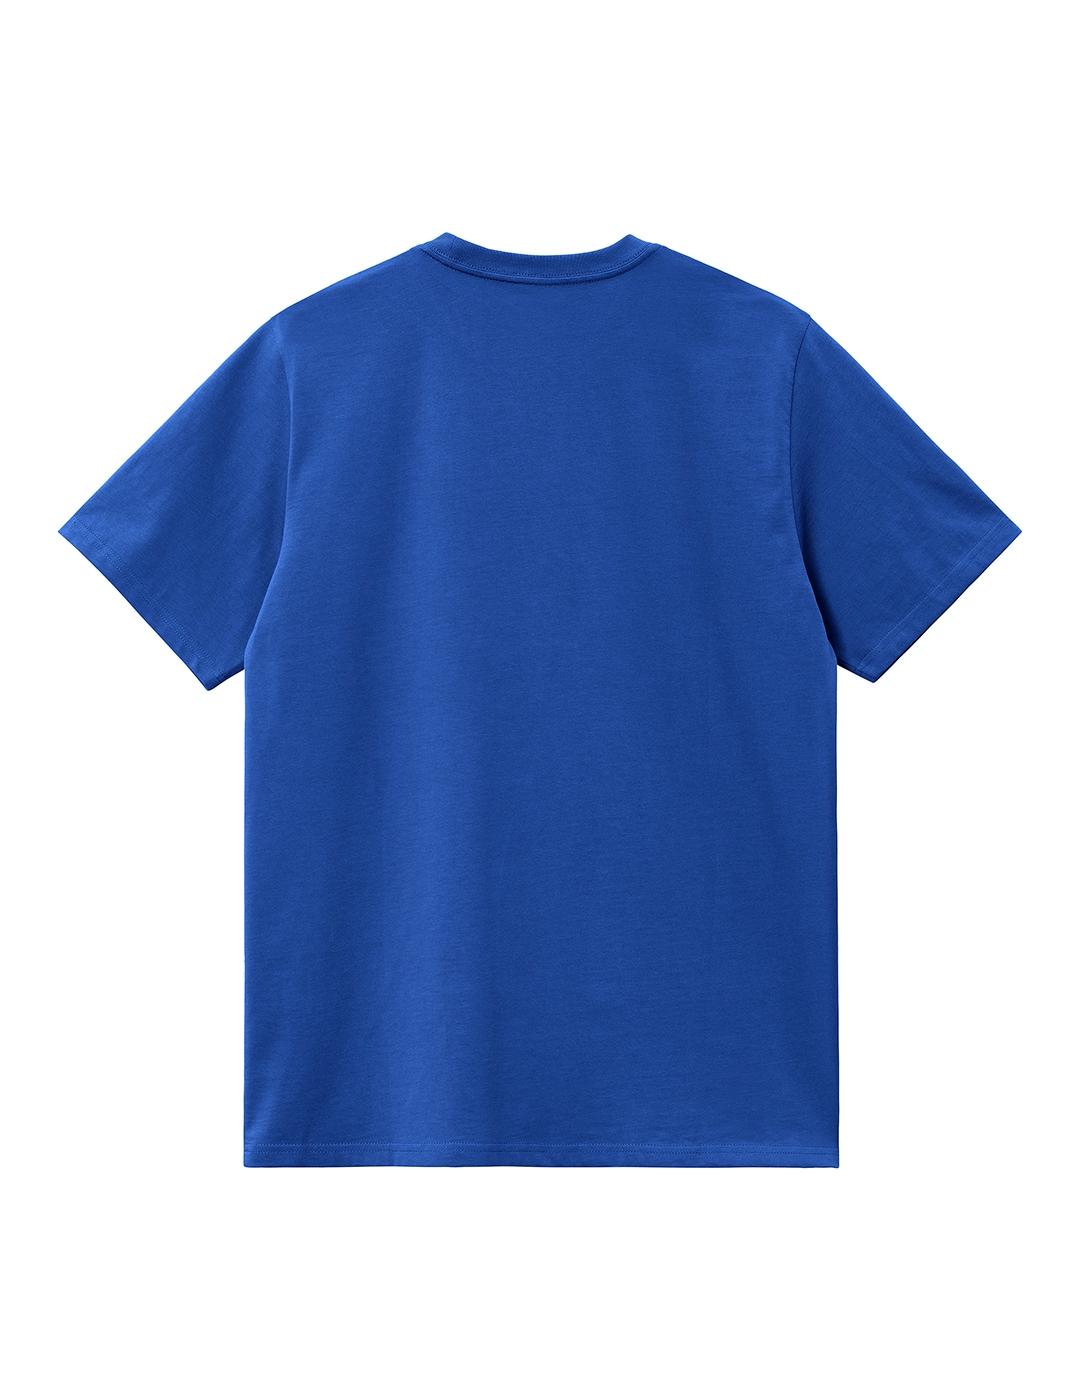 Camiseta Carhartt Wip S/S Chase azulón para hombre